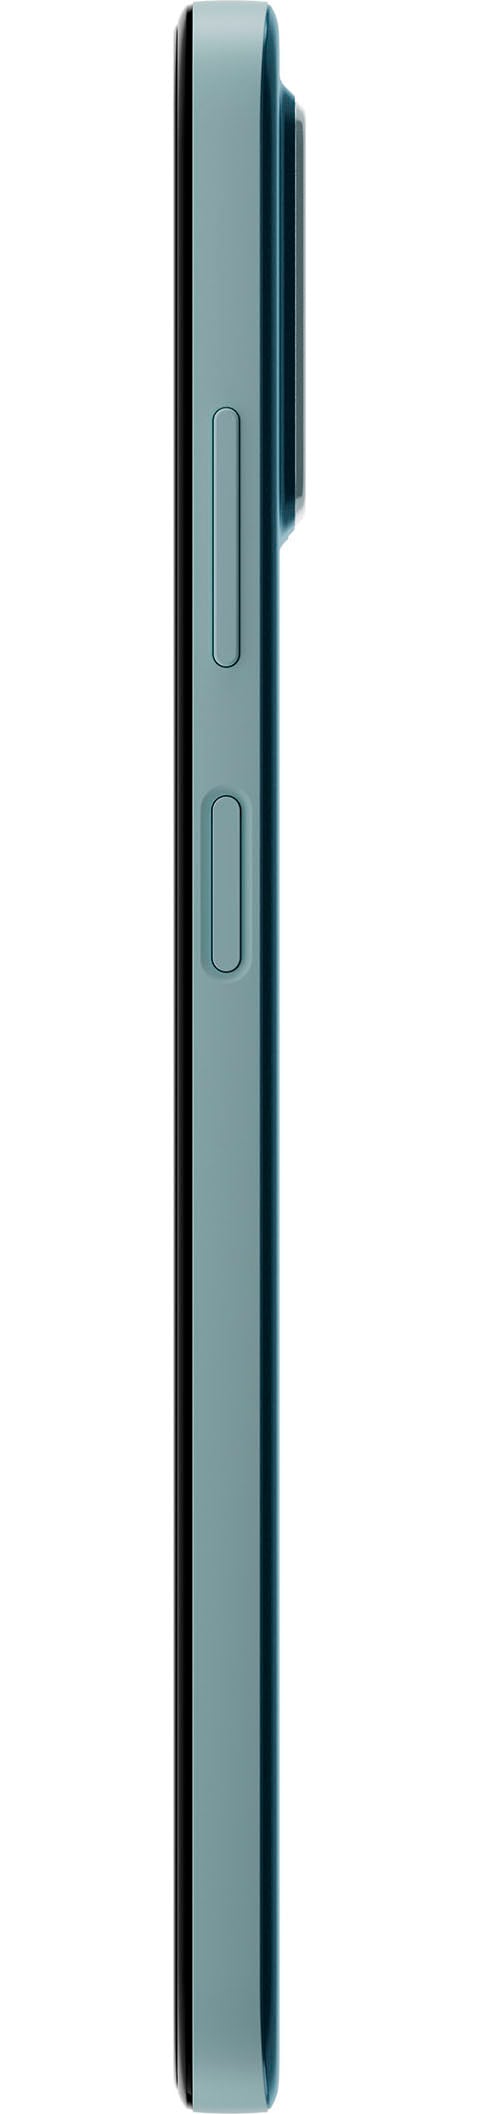 Nokia Smartphone »G22«, grau, 16,56 cm/6,52 Zoll, 64 GB Speicherplatz, 50  MP Kamera jetzt kaufen bei OTTO